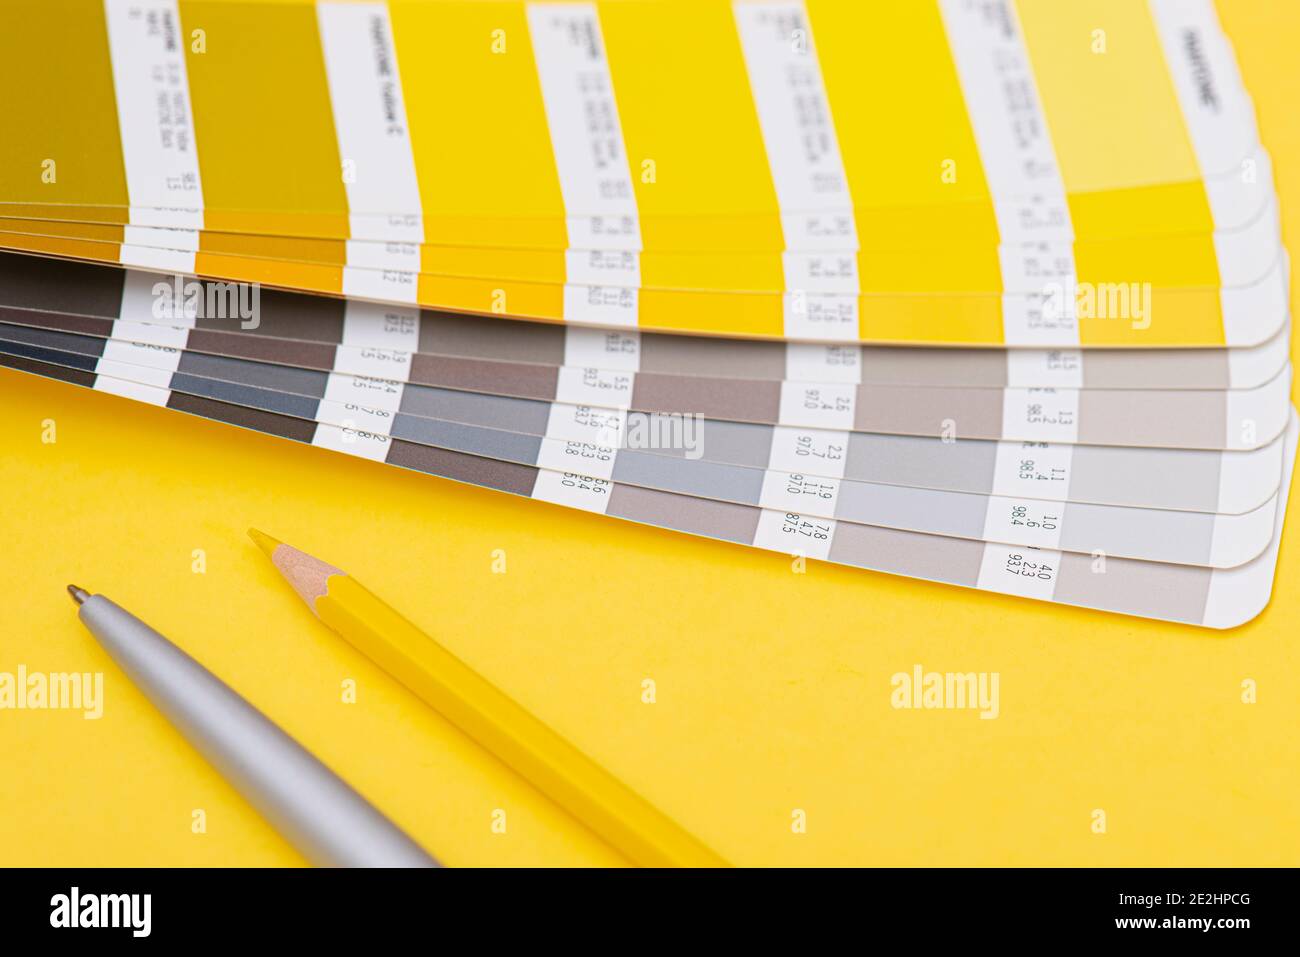 Tavolozza con il colore dell'anno 2021 - giallo vivo e grigio neutro, layout, modello di colore Foto Stock